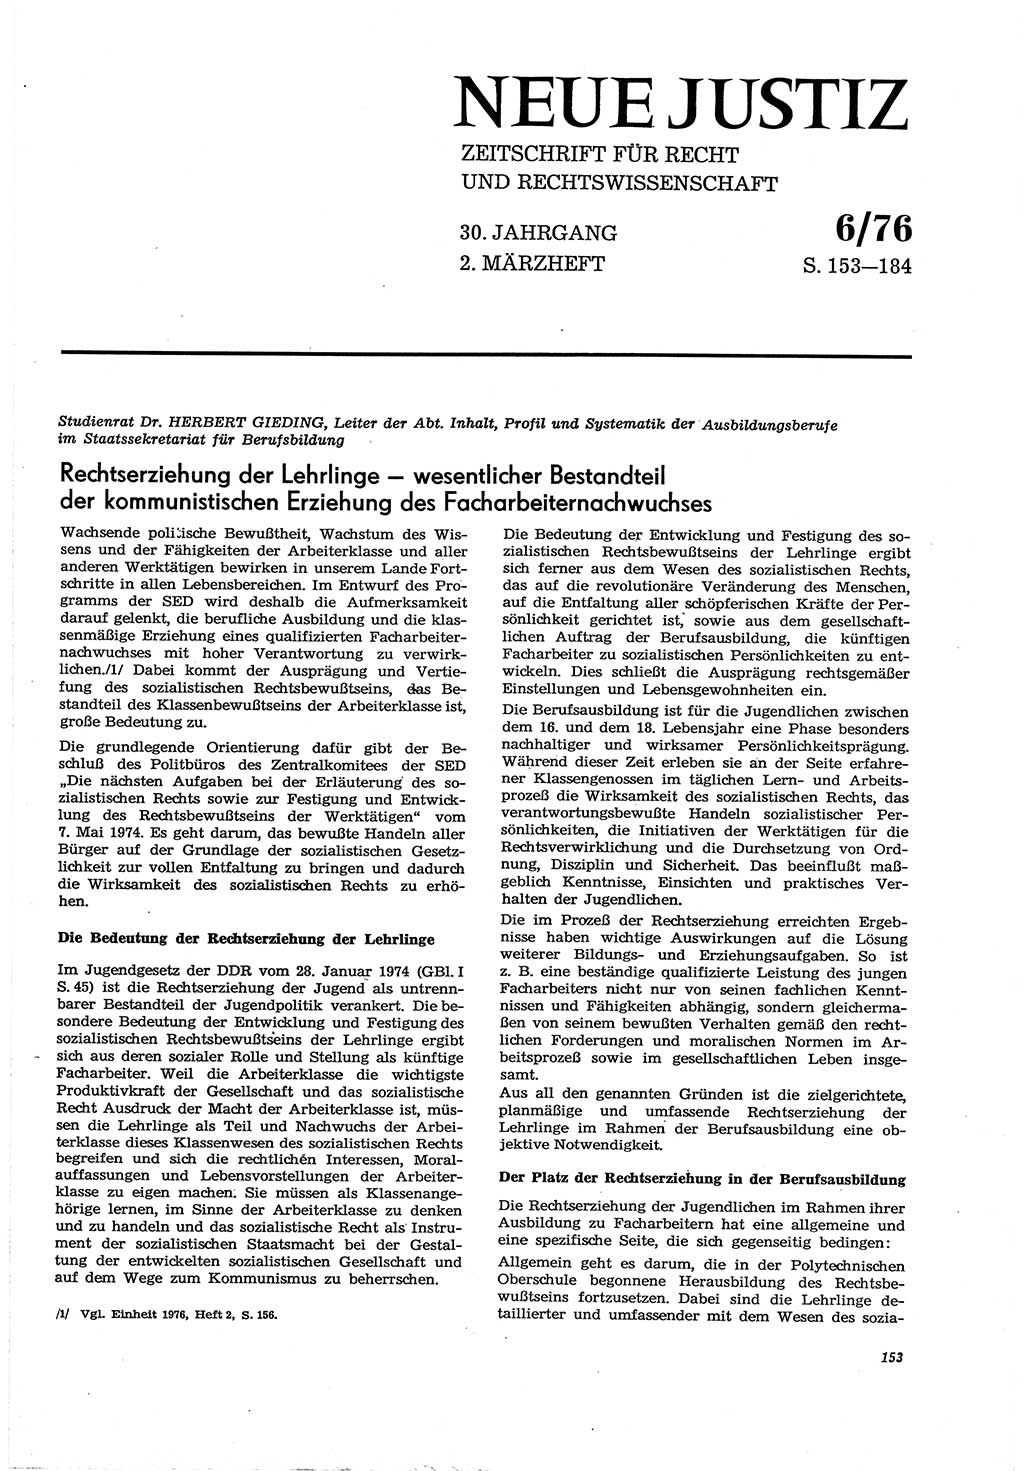 Neue Justiz (NJ), Zeitschrift für Recht und Rechtswissenschaft [Deutsche Demokratische Republik (DDR)], 30. Jahrgang 1976, Seite 153 (NJ DDR 1976, S. 153)